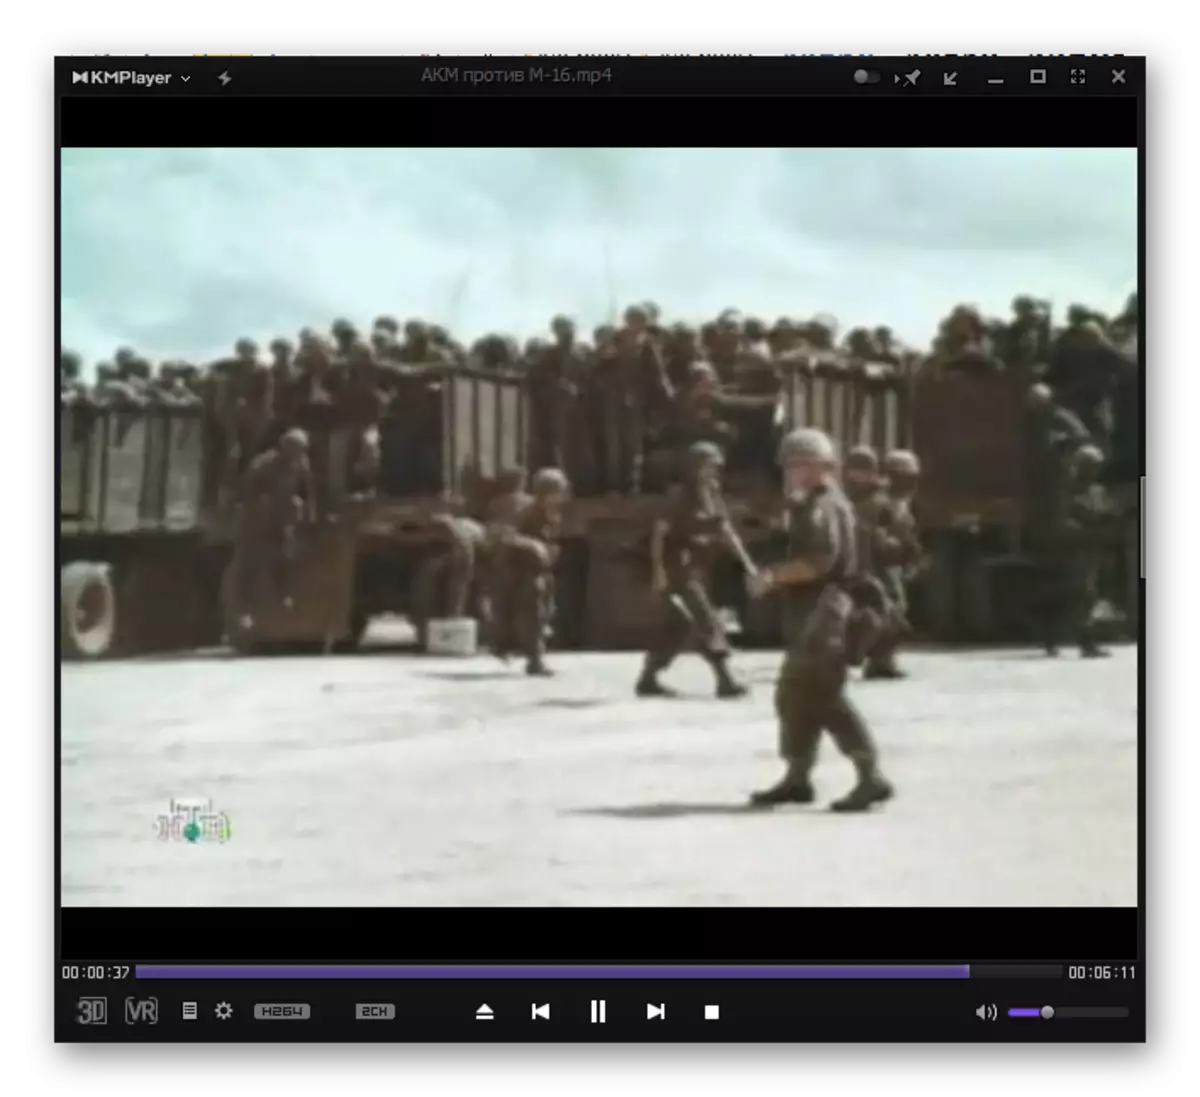 Reproduzindo o arquivo de vídeo MP4 no programa KMPlayer